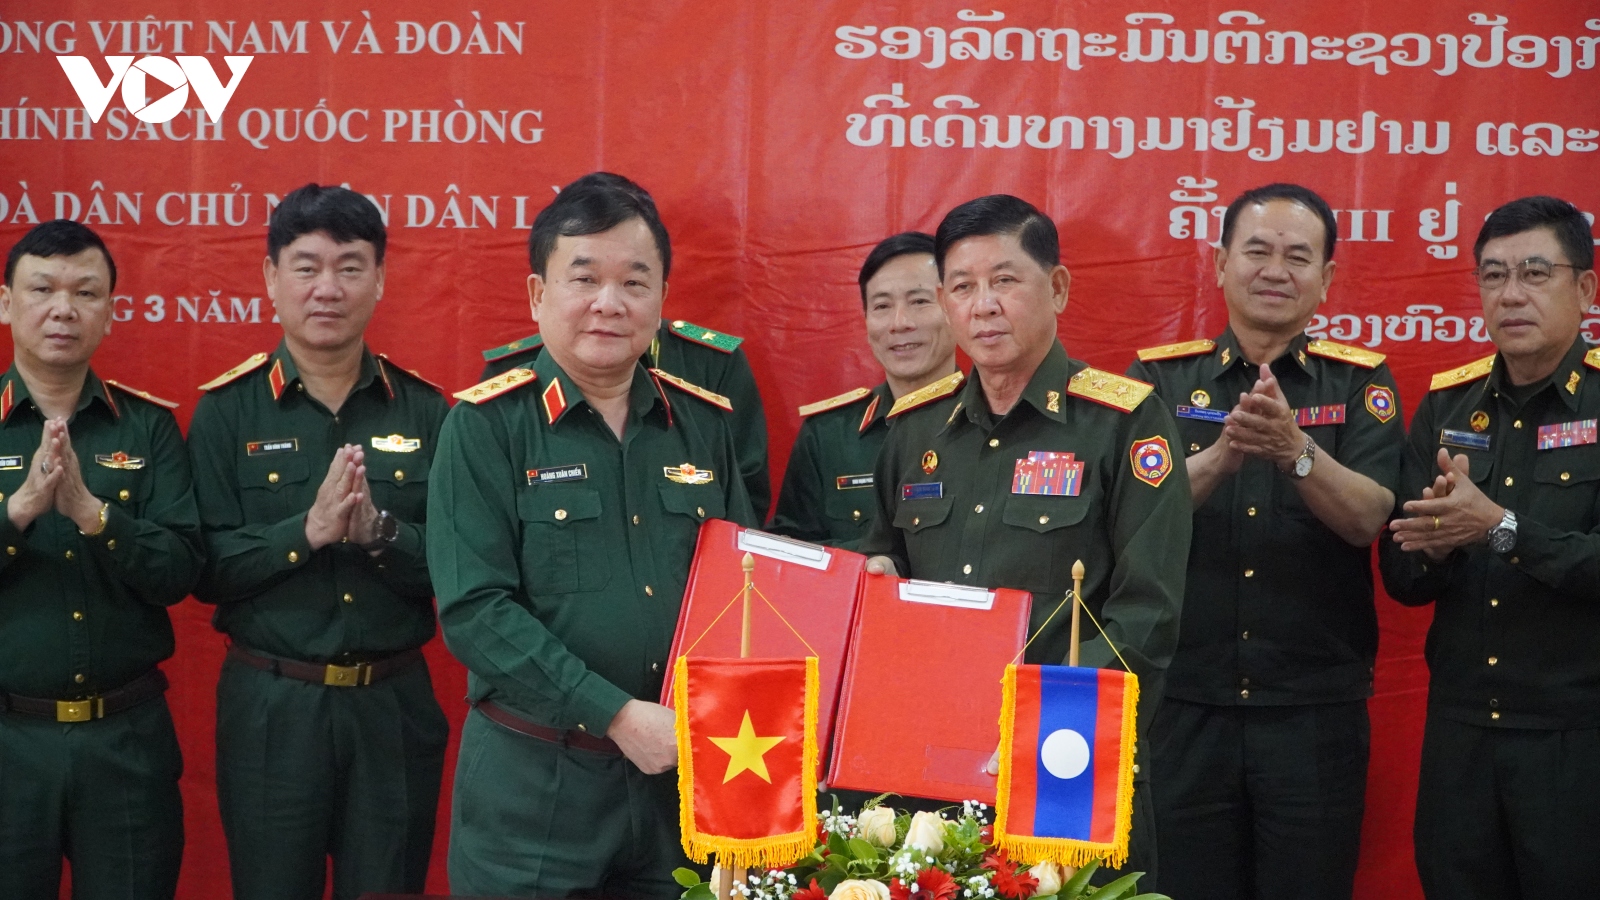 Trao đổi chính sách quốc phòng Việt Nam-Lào lần thứ 3